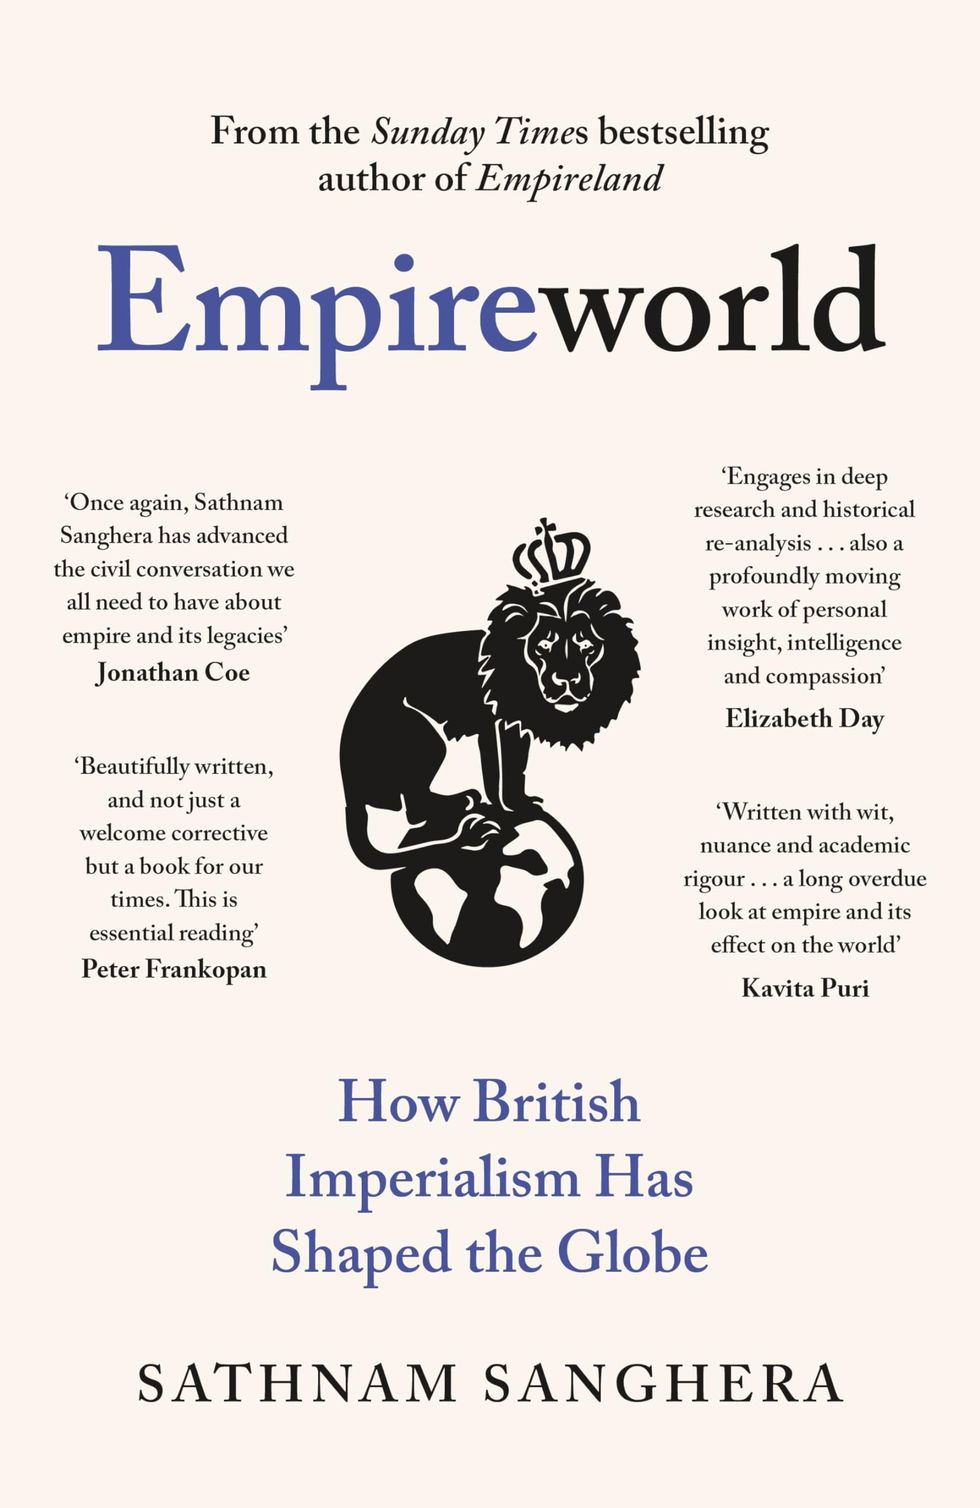 Empireworld: How British Imperialism Has Shaped the Globe, Sathnam Sanghera (25 January)